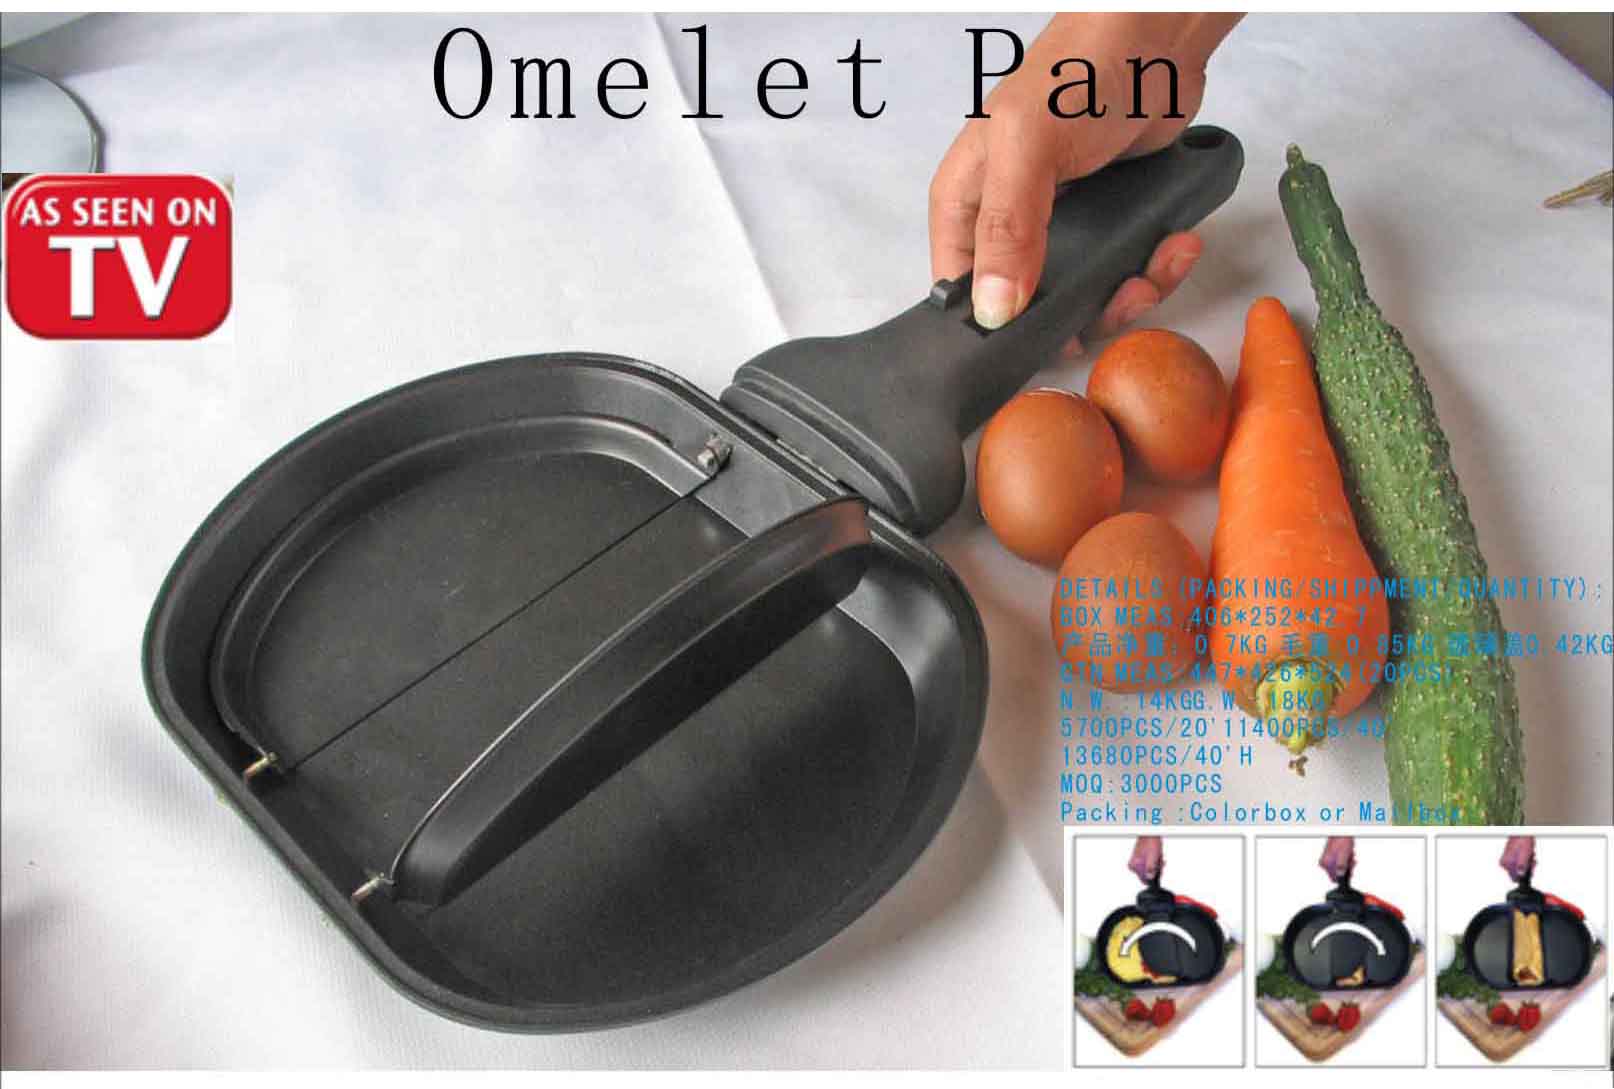 Omelett Pan (Omelett Pan)